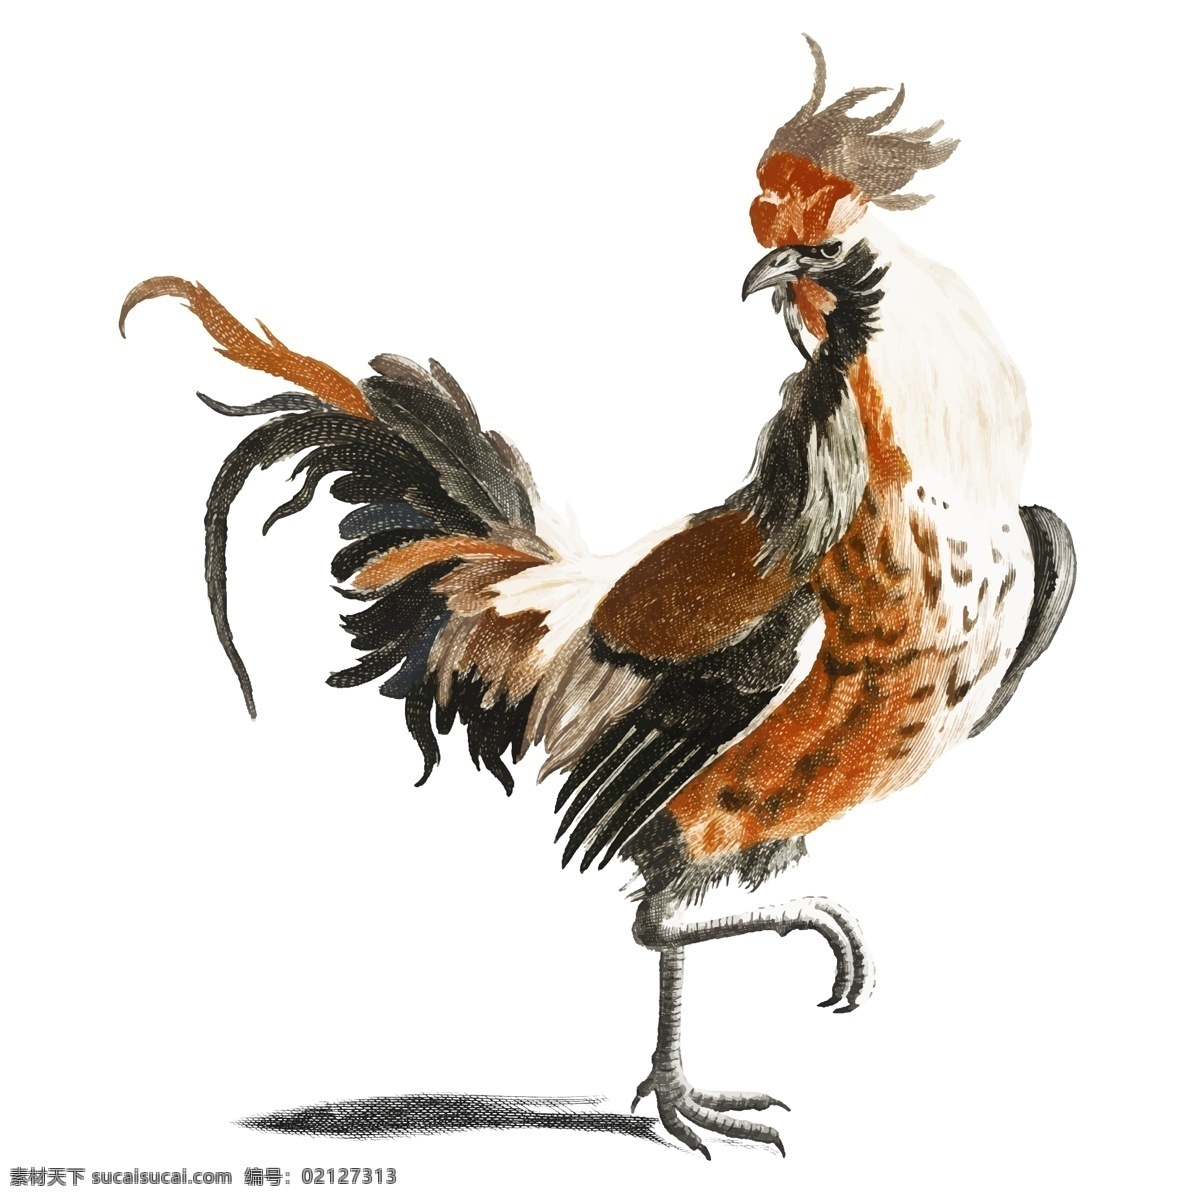 矢量鸡 卡通鸡 手绘鸡 鸡插画 鸡插图 素描鸡 彩色鸡 水彩鸡 动物 生物世界 家禽家畜